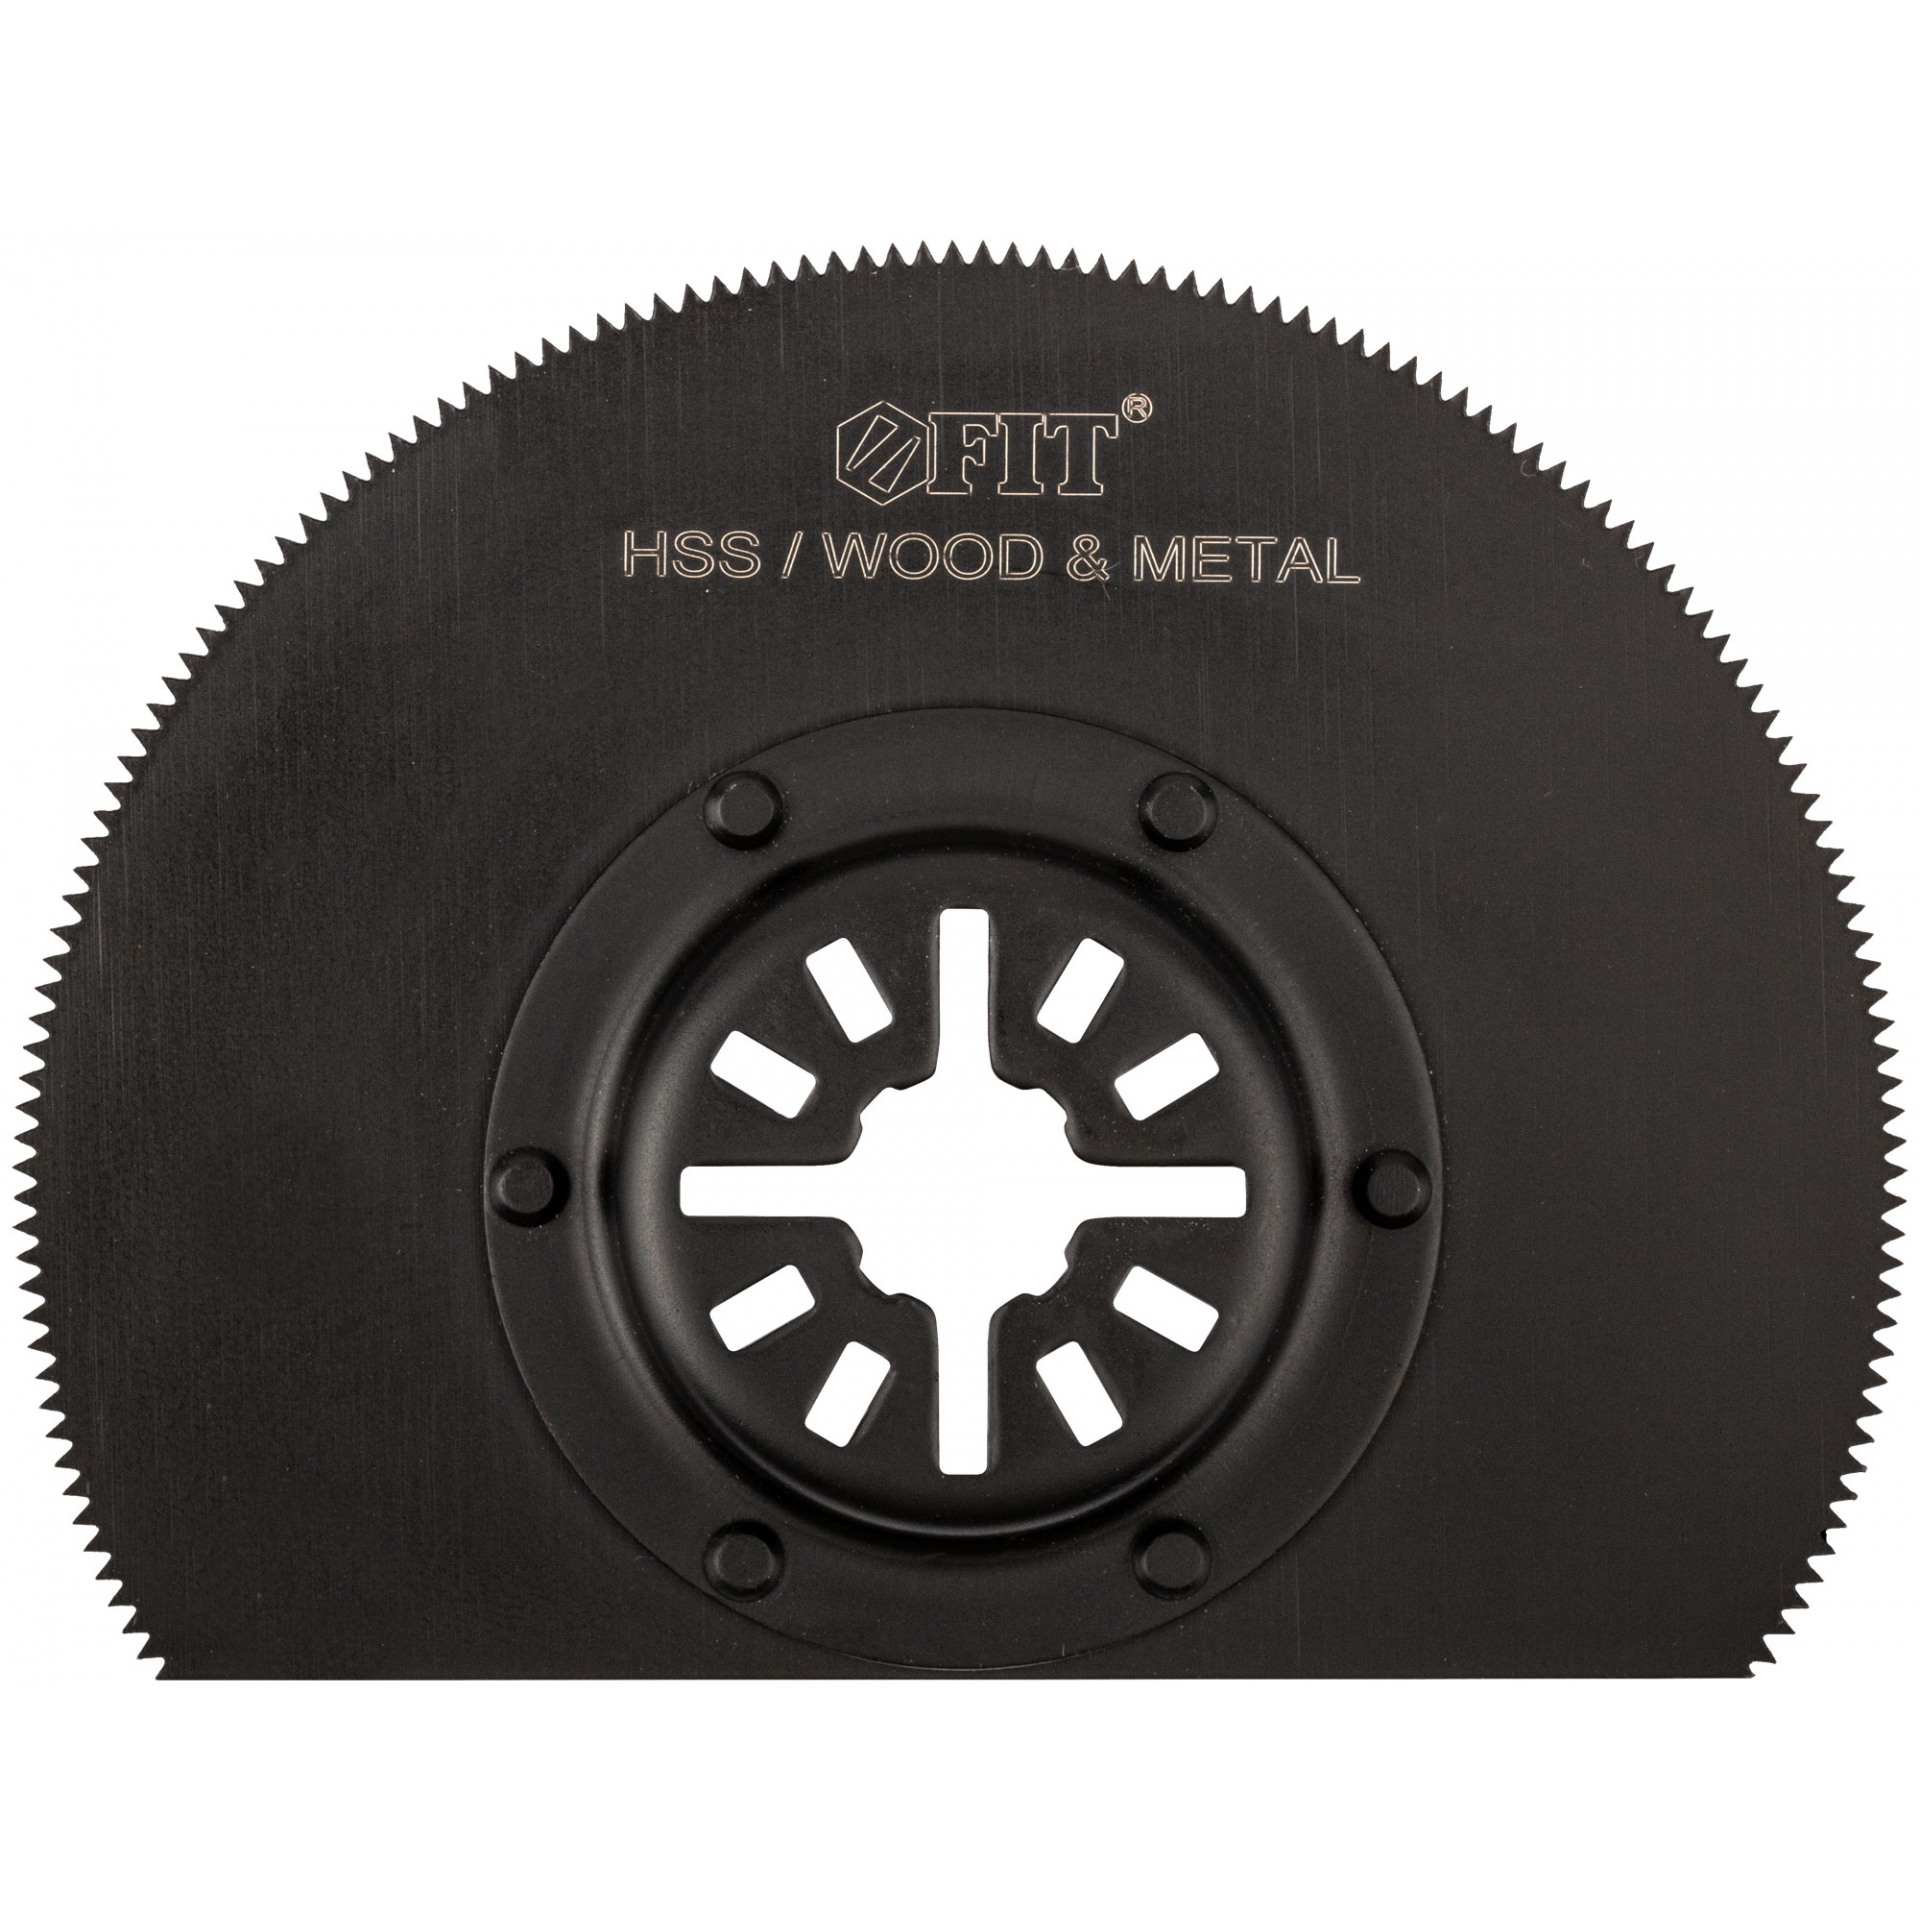 Полотно пильное фрезерованное дисковое ступенчатое, Bi-metall Co 8%, 87 мм х 0,65 мм